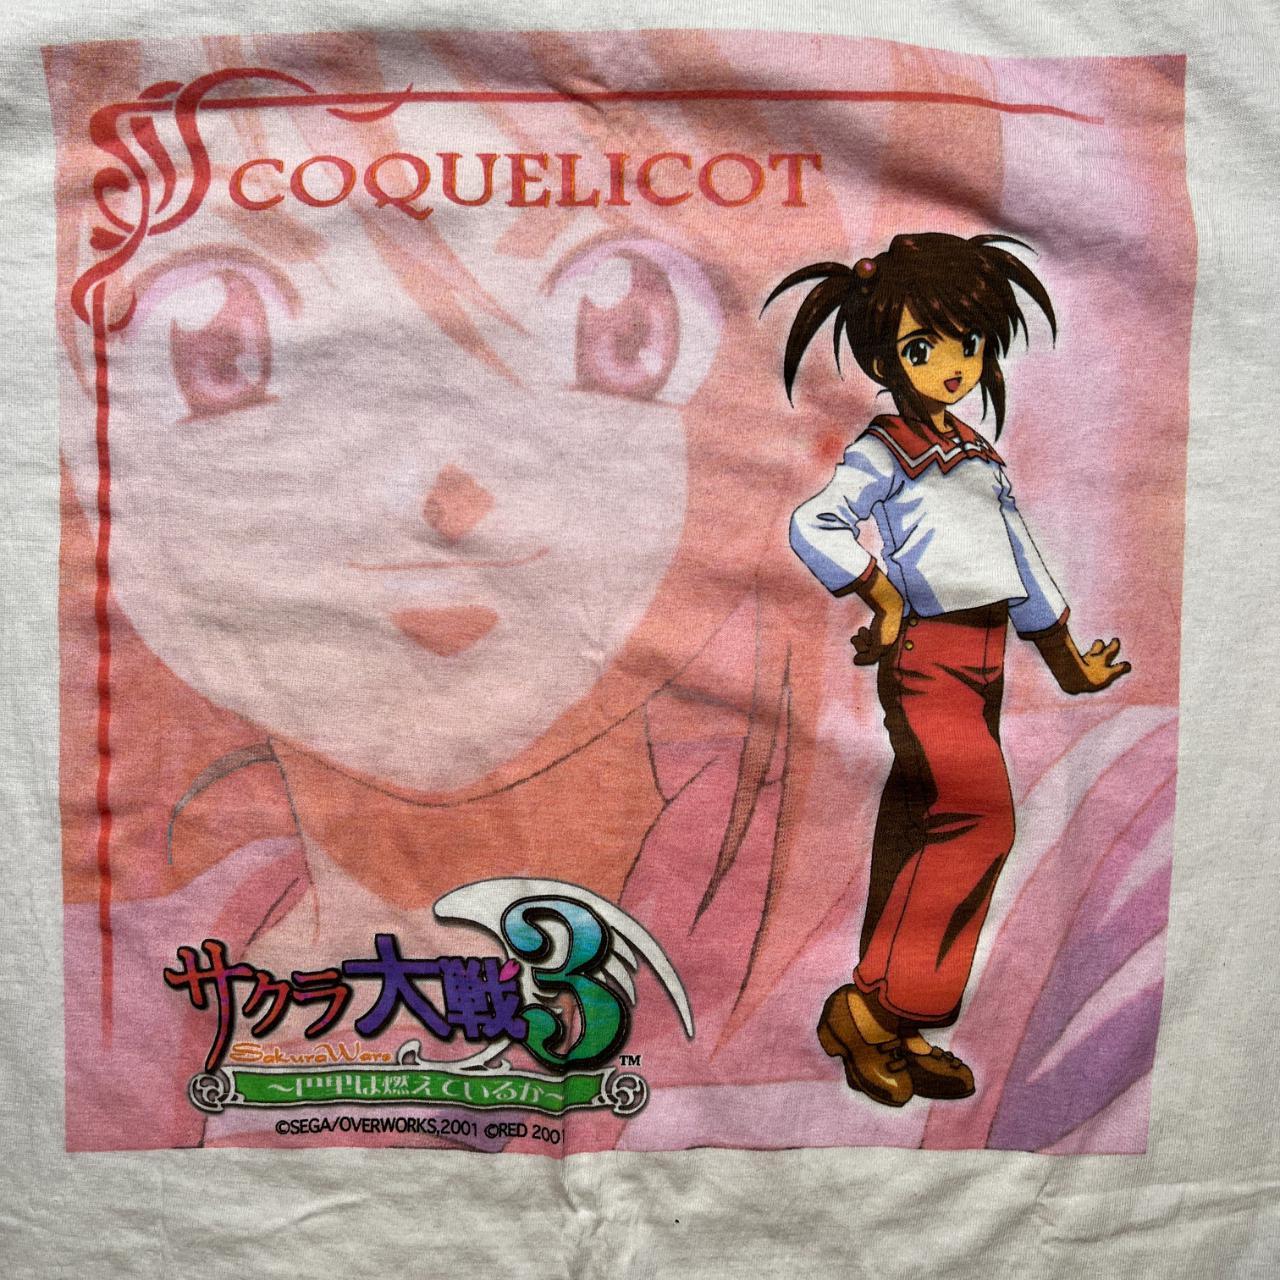 Vintage Sakura Wars free size promo shirt, 90s Sega...